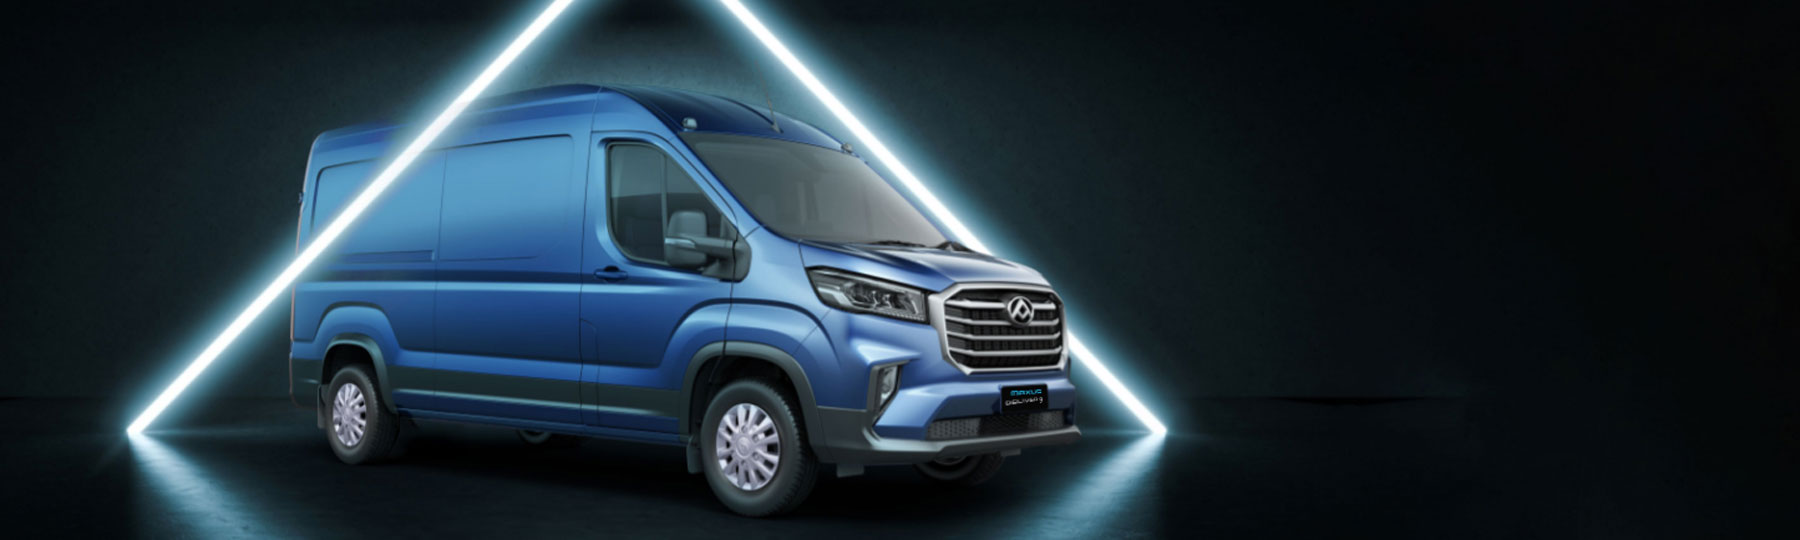 maxus Deliver 9 New Van Offer